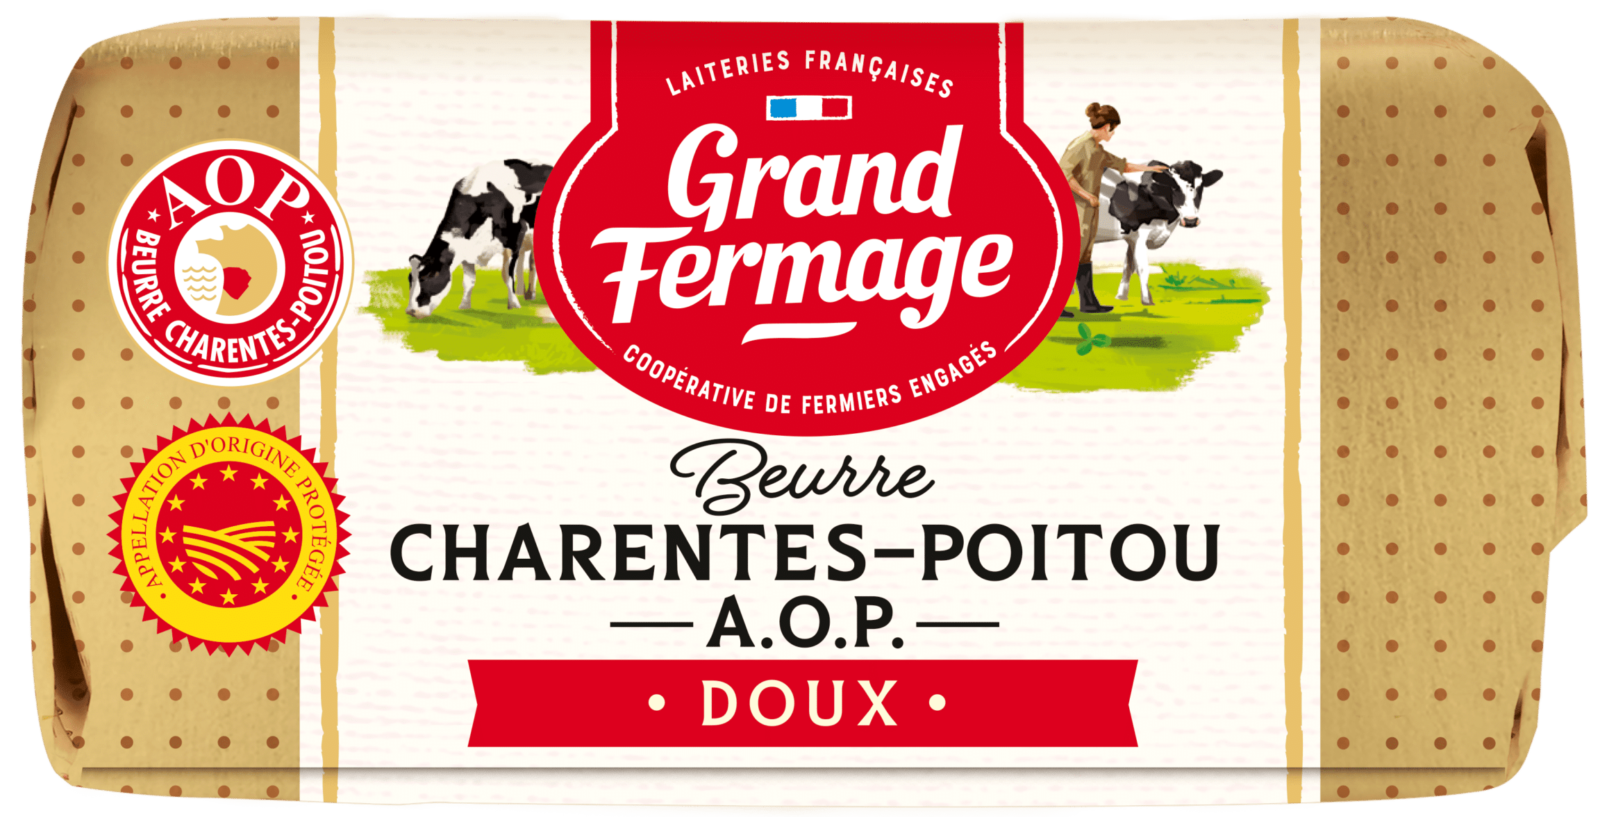 Madeleines de Pons Colibri beurre AOP Charentes Poitou